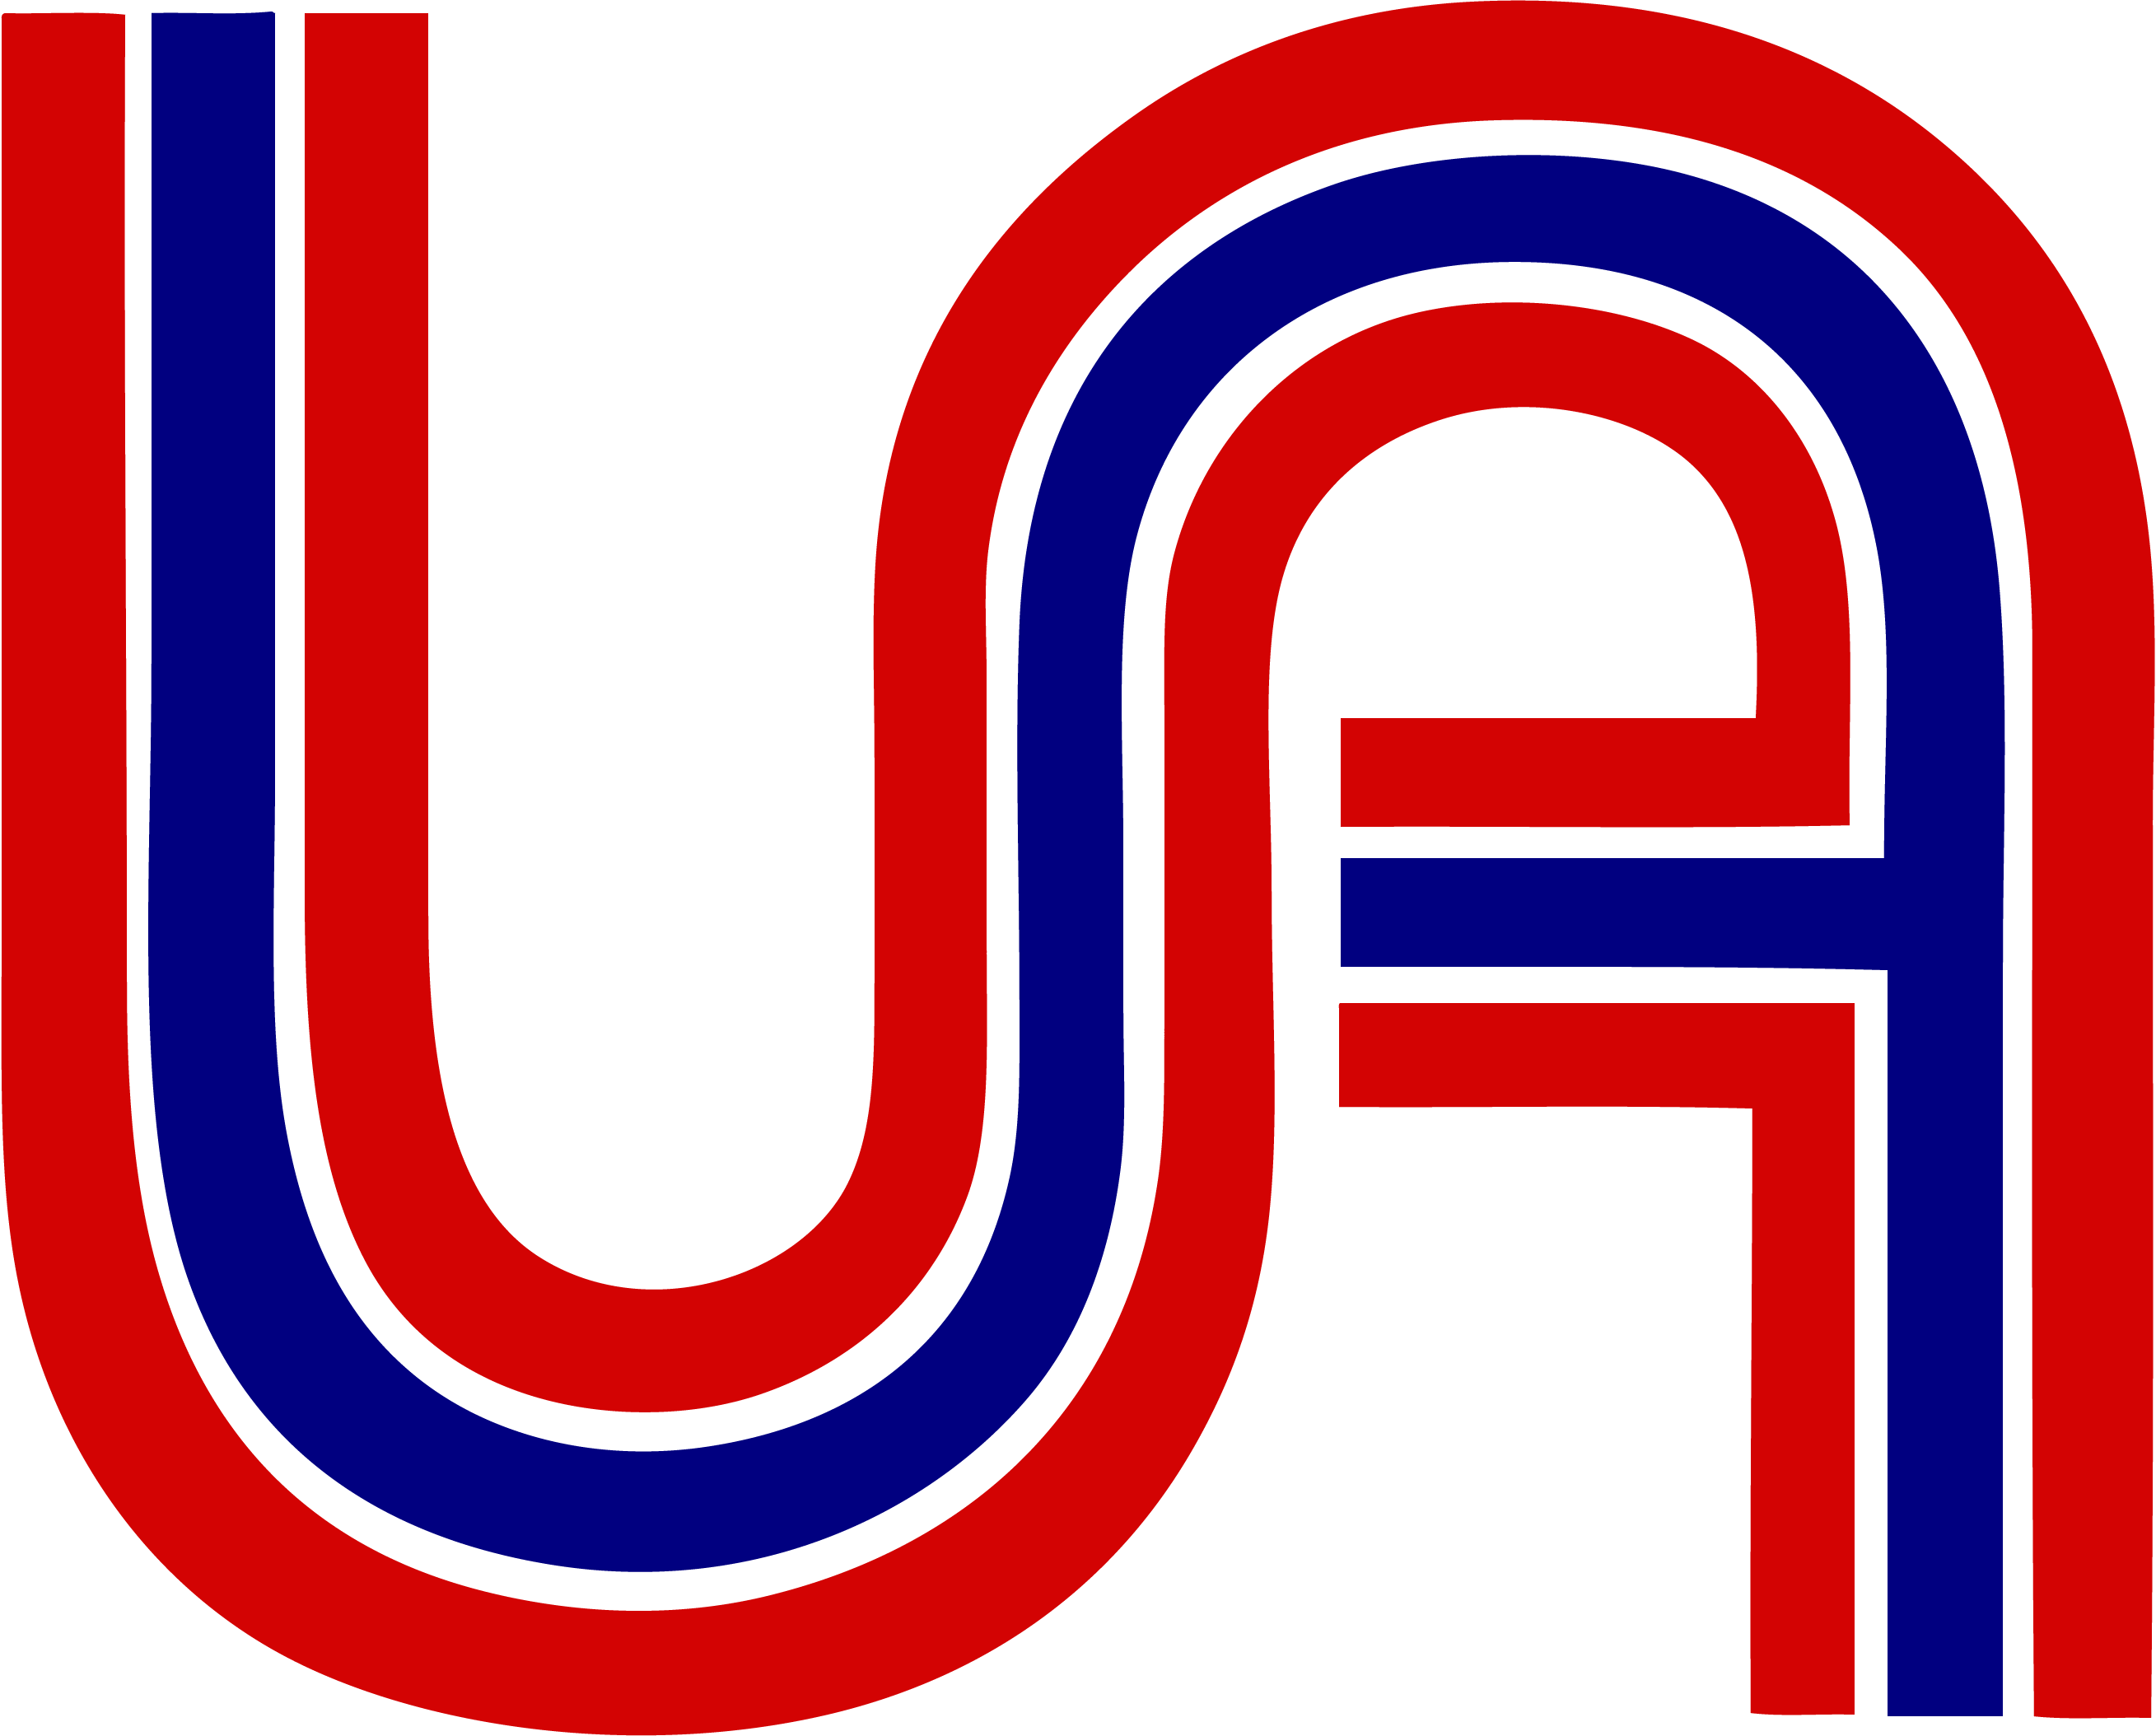 ua_logo